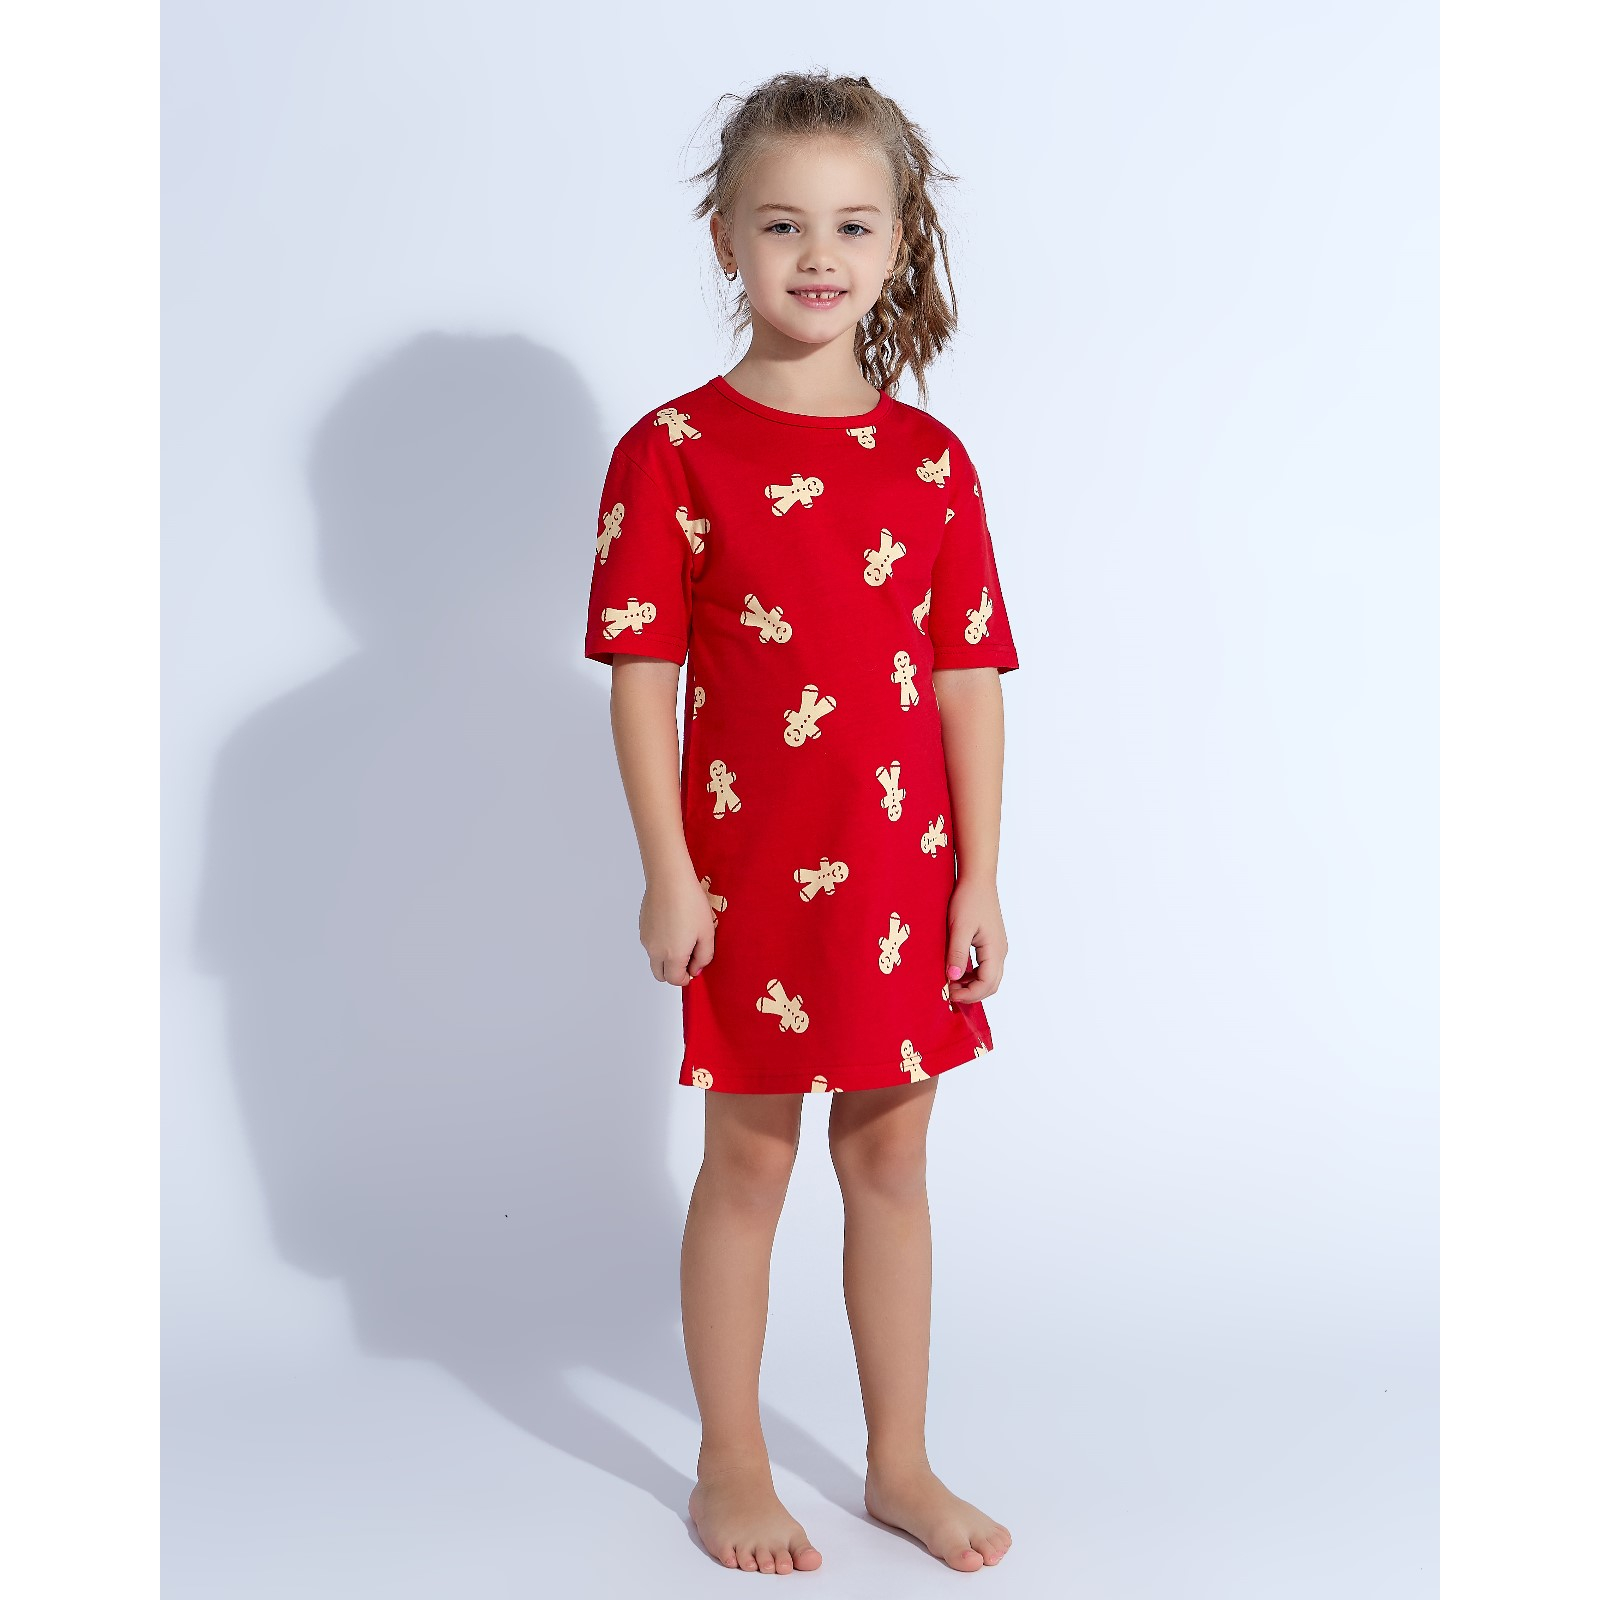 Детская ночная сорочка Печеньки Цвет: Красный (8 лет), размер 8 лет mak600423 Детская ночная сорочка Печеньки Цвет: Красный (8 лет) - фото 1